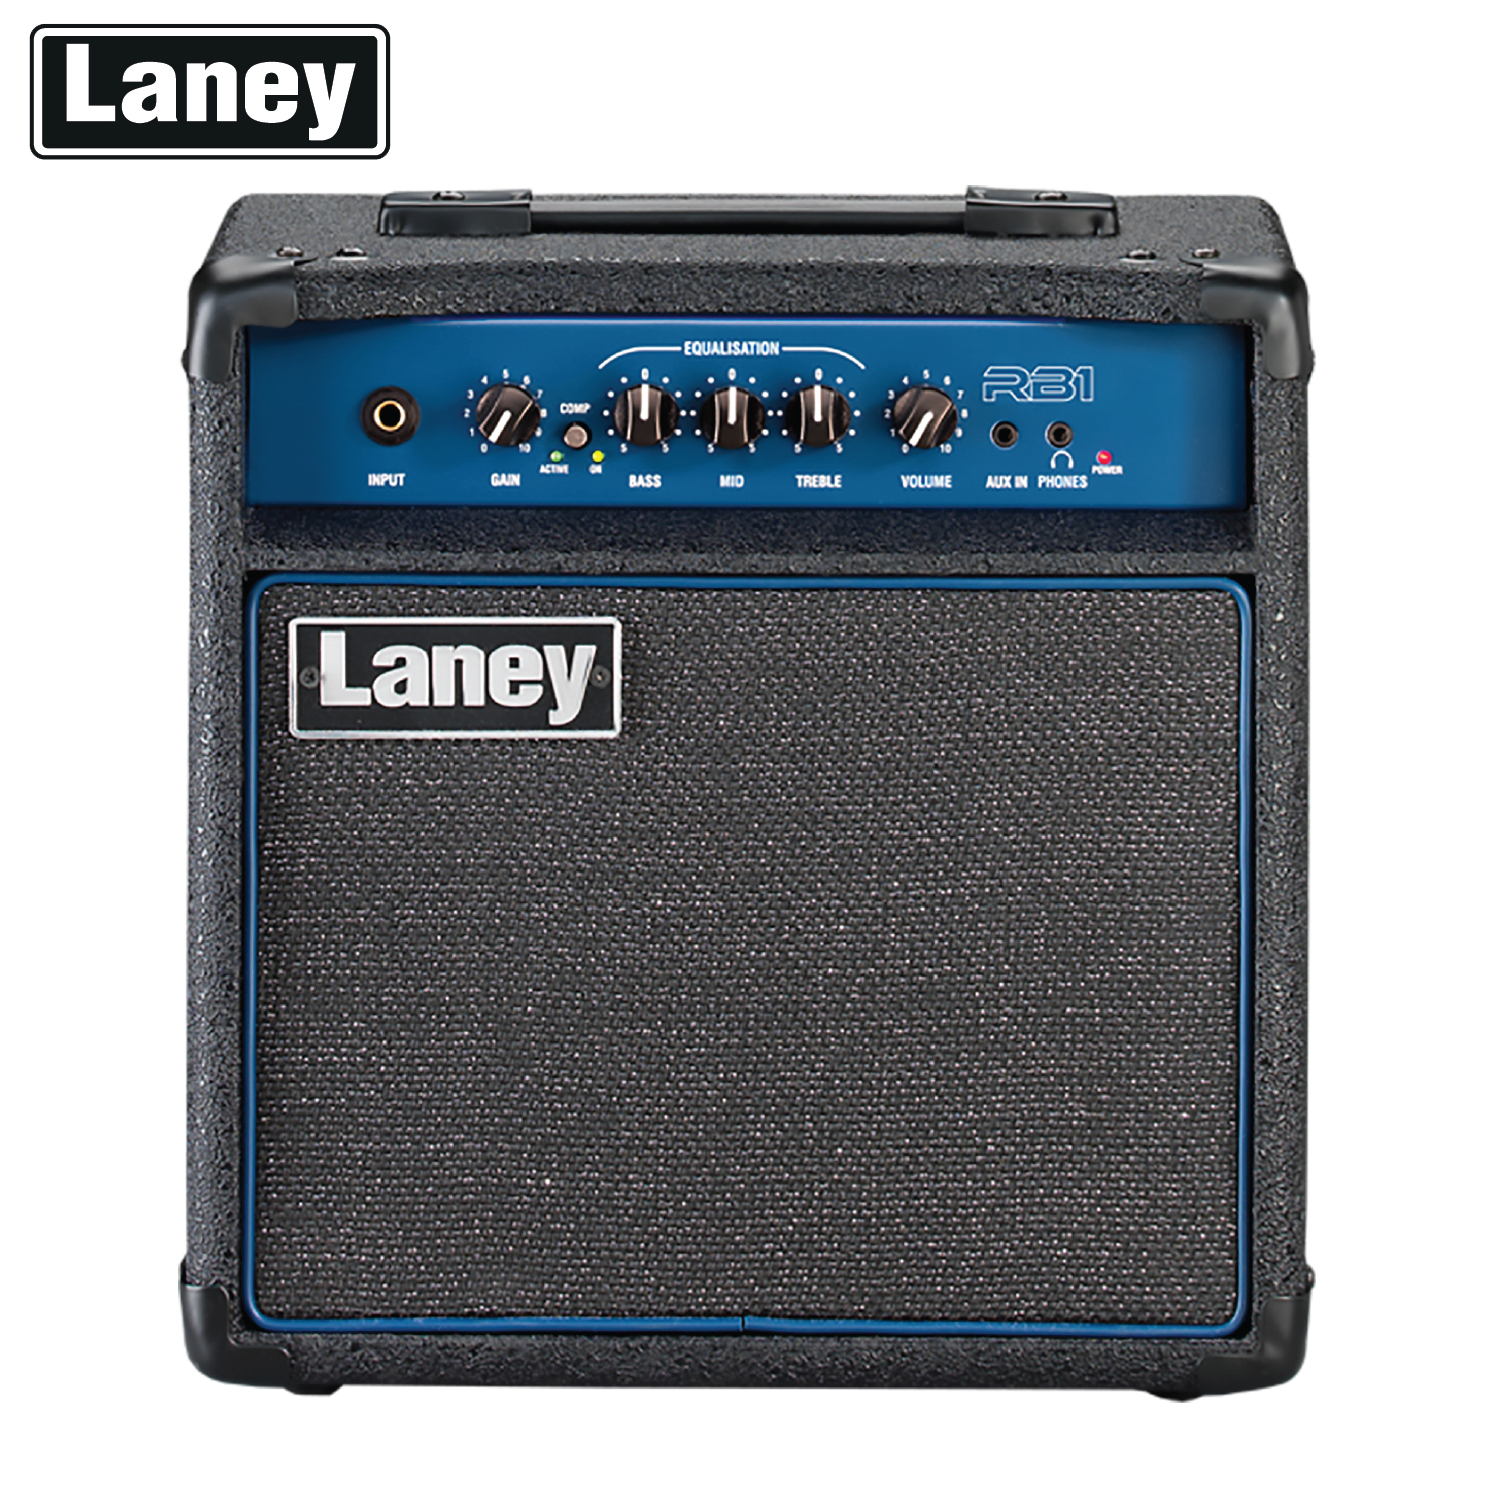 Laney® RB1 Bass Amp แอมป์กีตาร์เบส แอมป์เบส 15 วัตต์ ตั้งเอียงได้ พร้อมเอฟเฟค Compression ต่อหูฟัง/Aux In ได้ + ฟรี ปลั๊กไฟ & คู่มือ **ประกันศูนย์ 1 ปี**